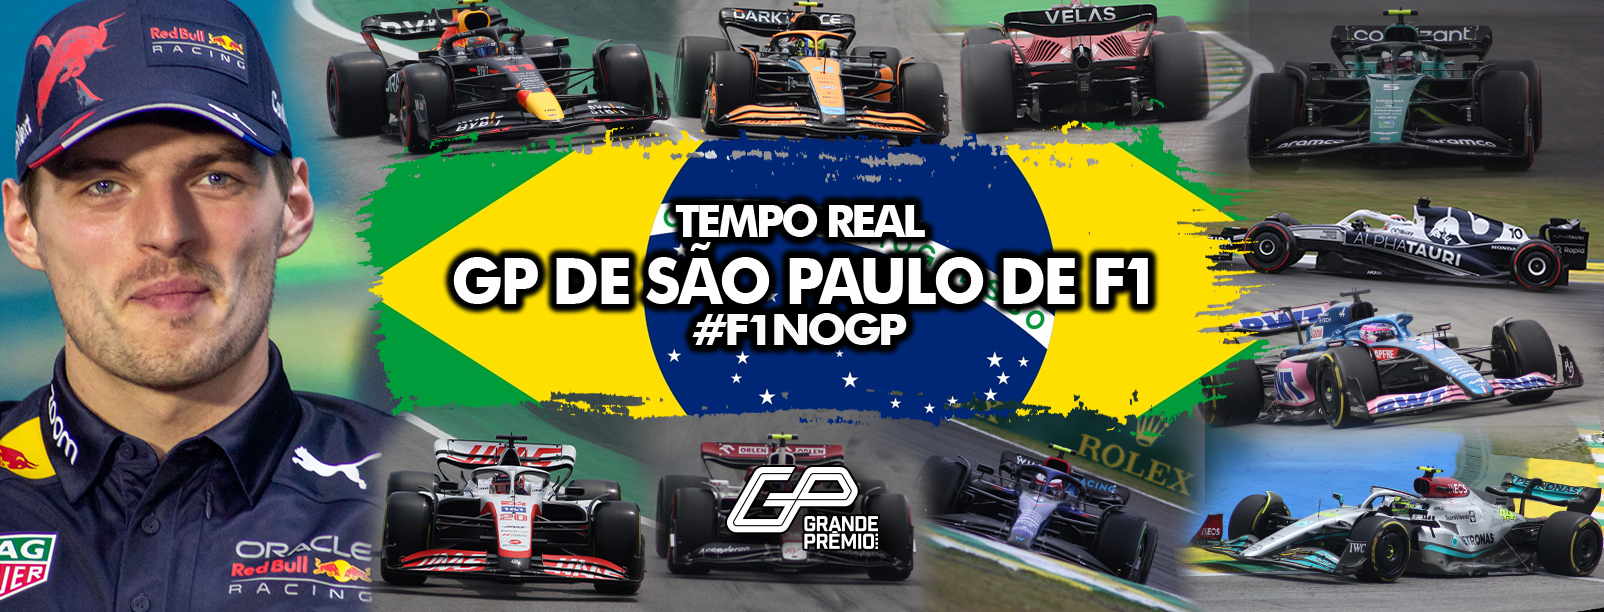 F1 em Interlagos: Acompanhe ao vivo a qualificação e o treino